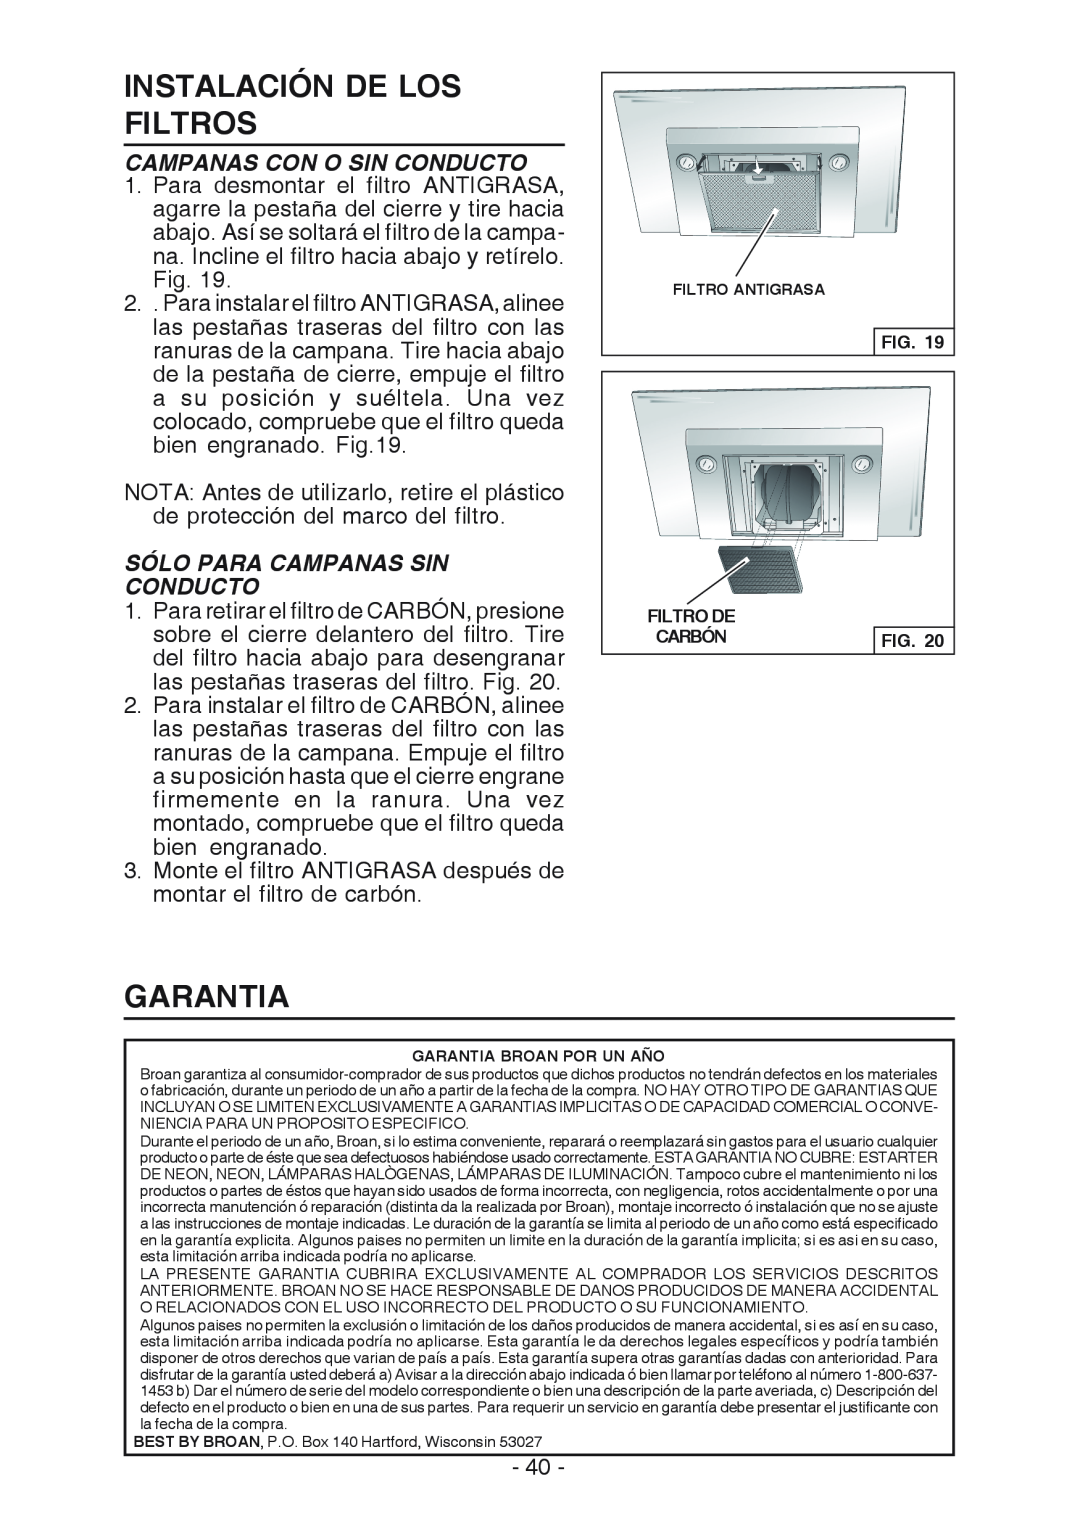 Broan WC26I manual Instalación De Los Filtros, Garantia, Campanas Con O Sin Conducto, Sólo Para Campanas Sin Conducto 